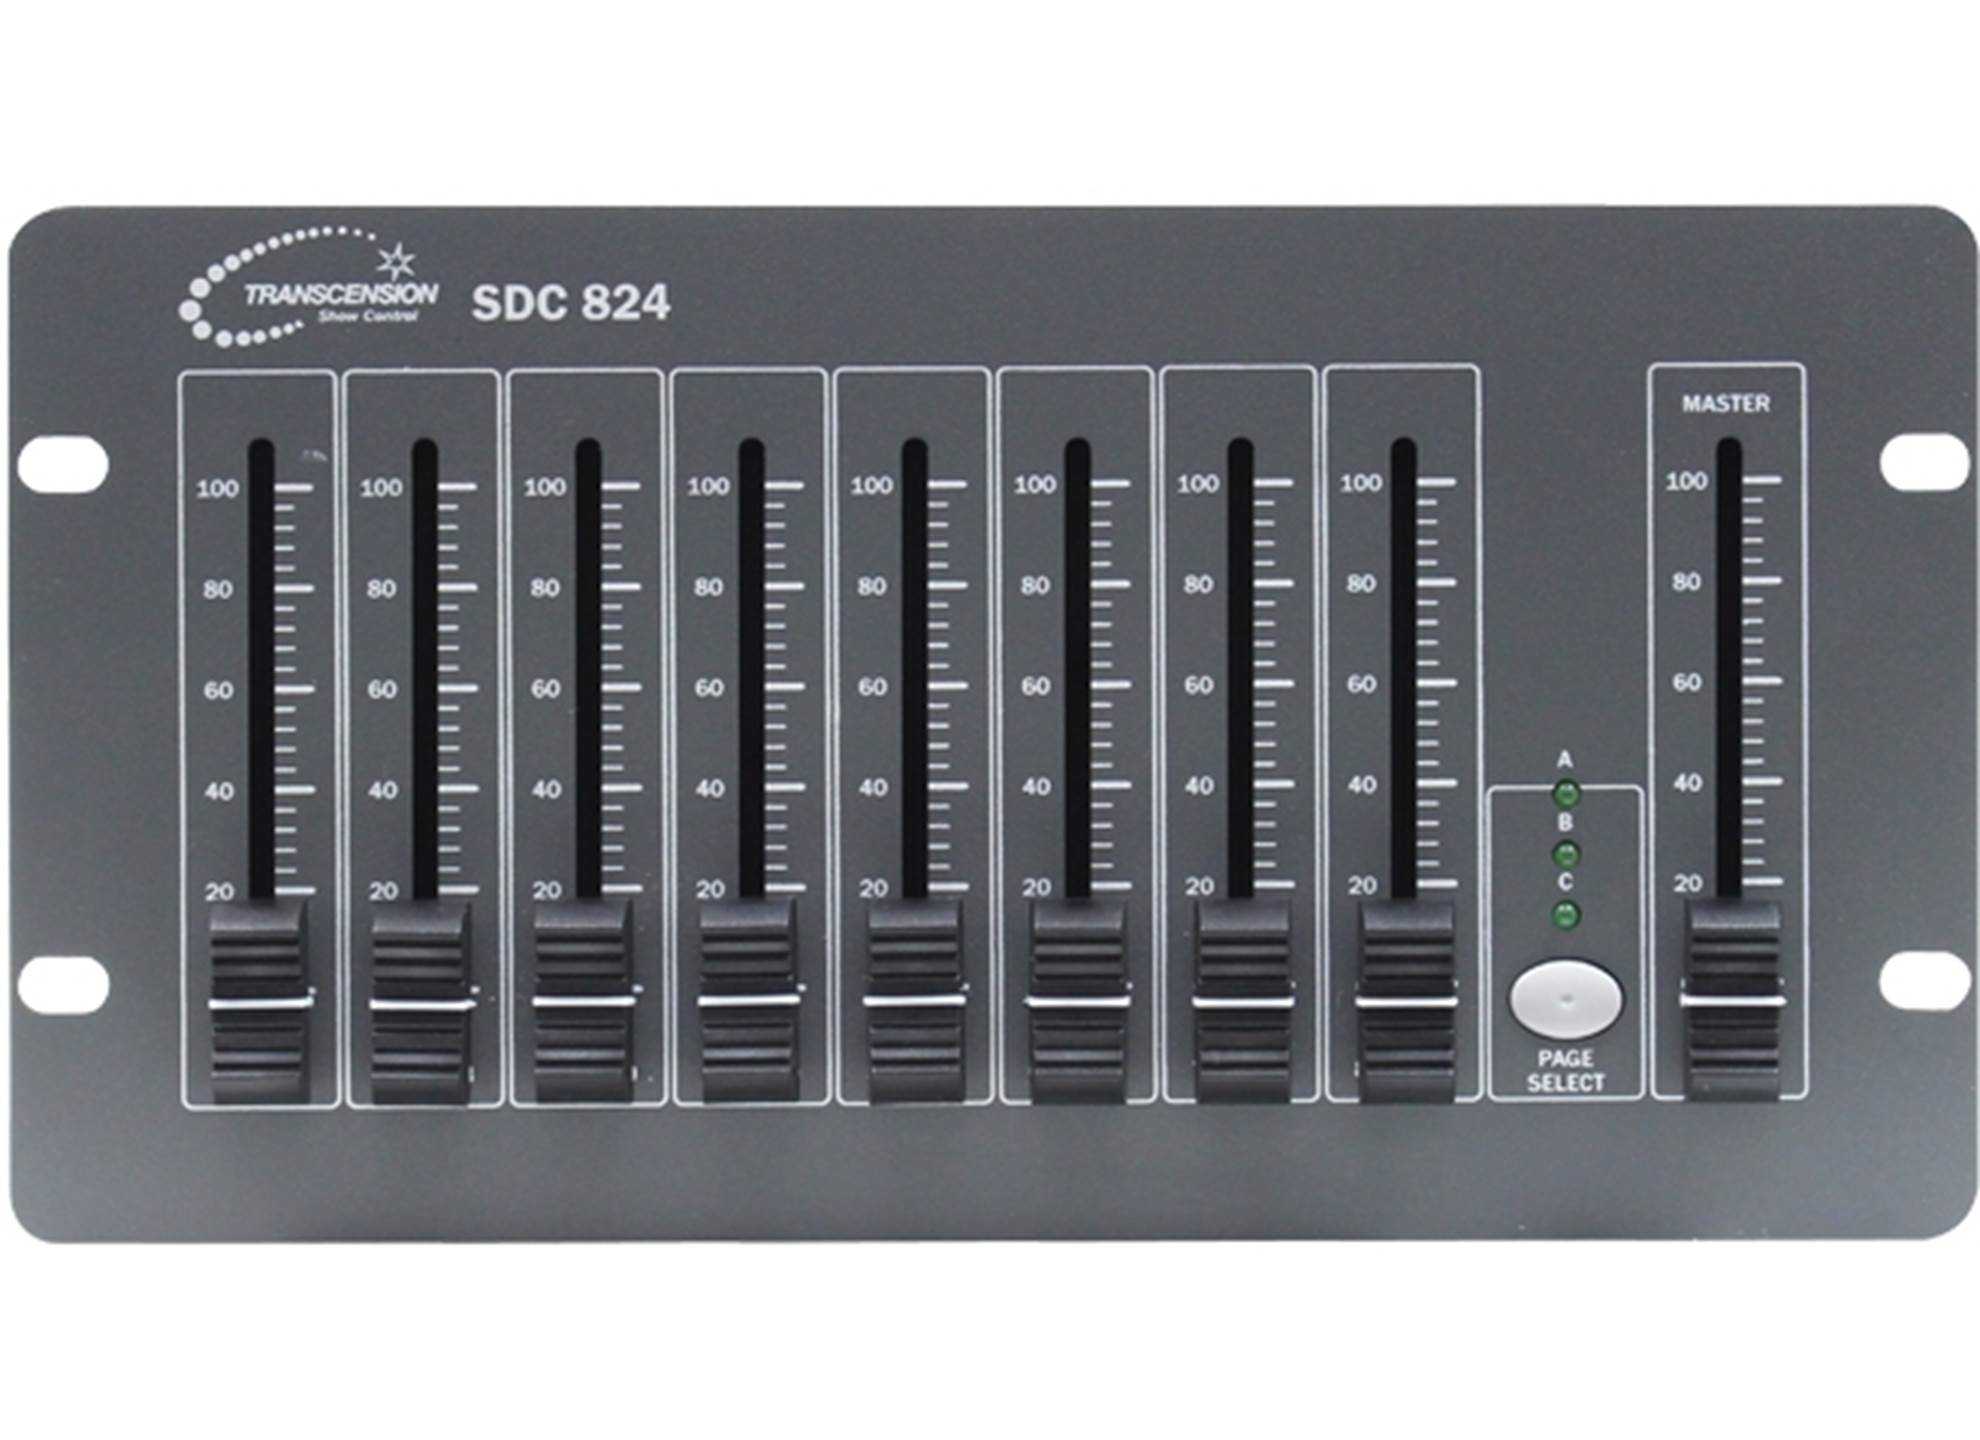 SDC824 DMX Controller